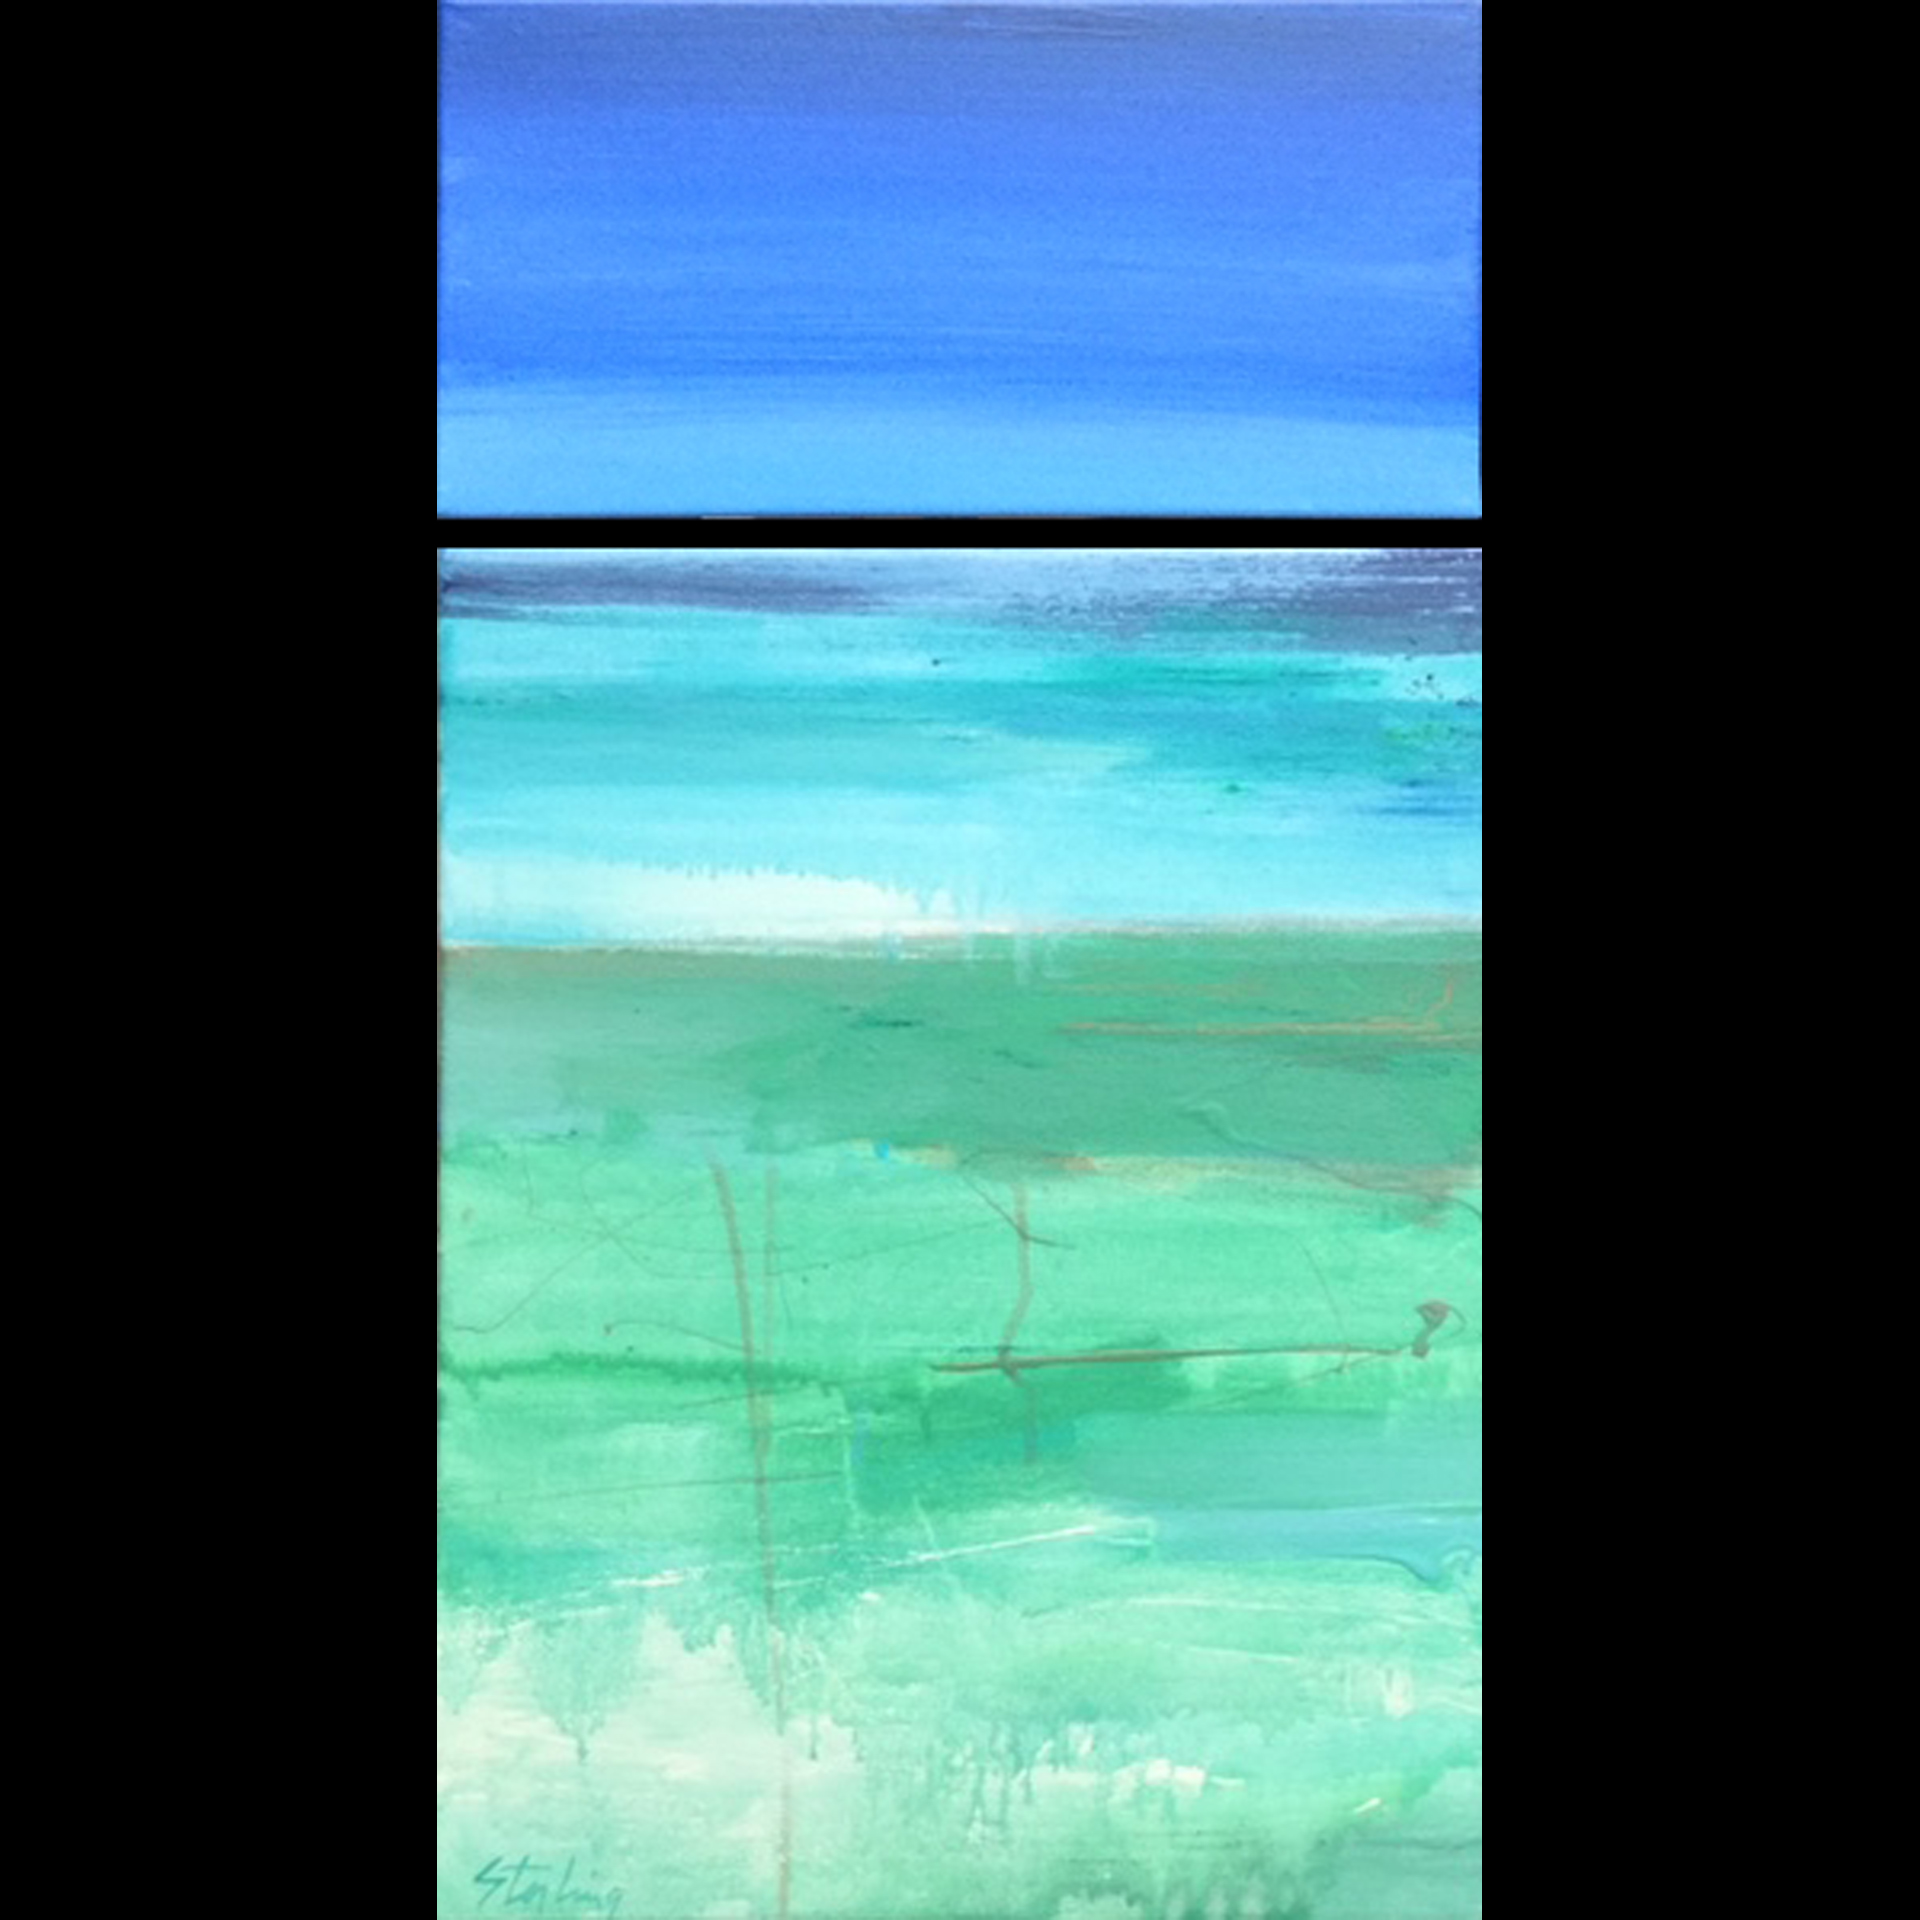 SEA LEVEL
acrylic on canvas diptych 14x26
$240